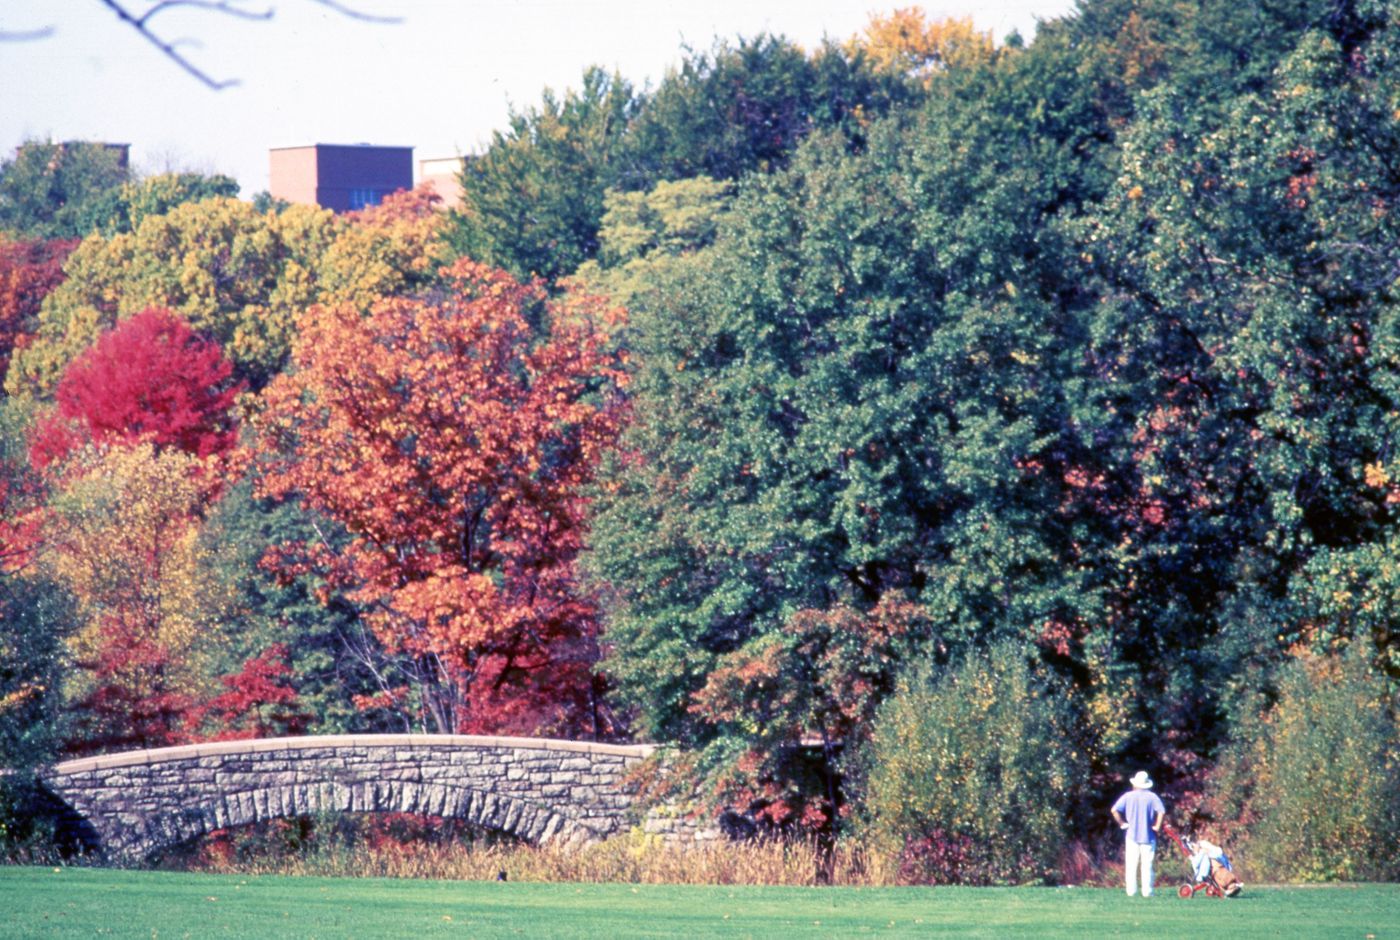 Photograph of stone bridge and trees for research for Olmsted: L'origine del parco urbano e del parco naturale contemporaneo